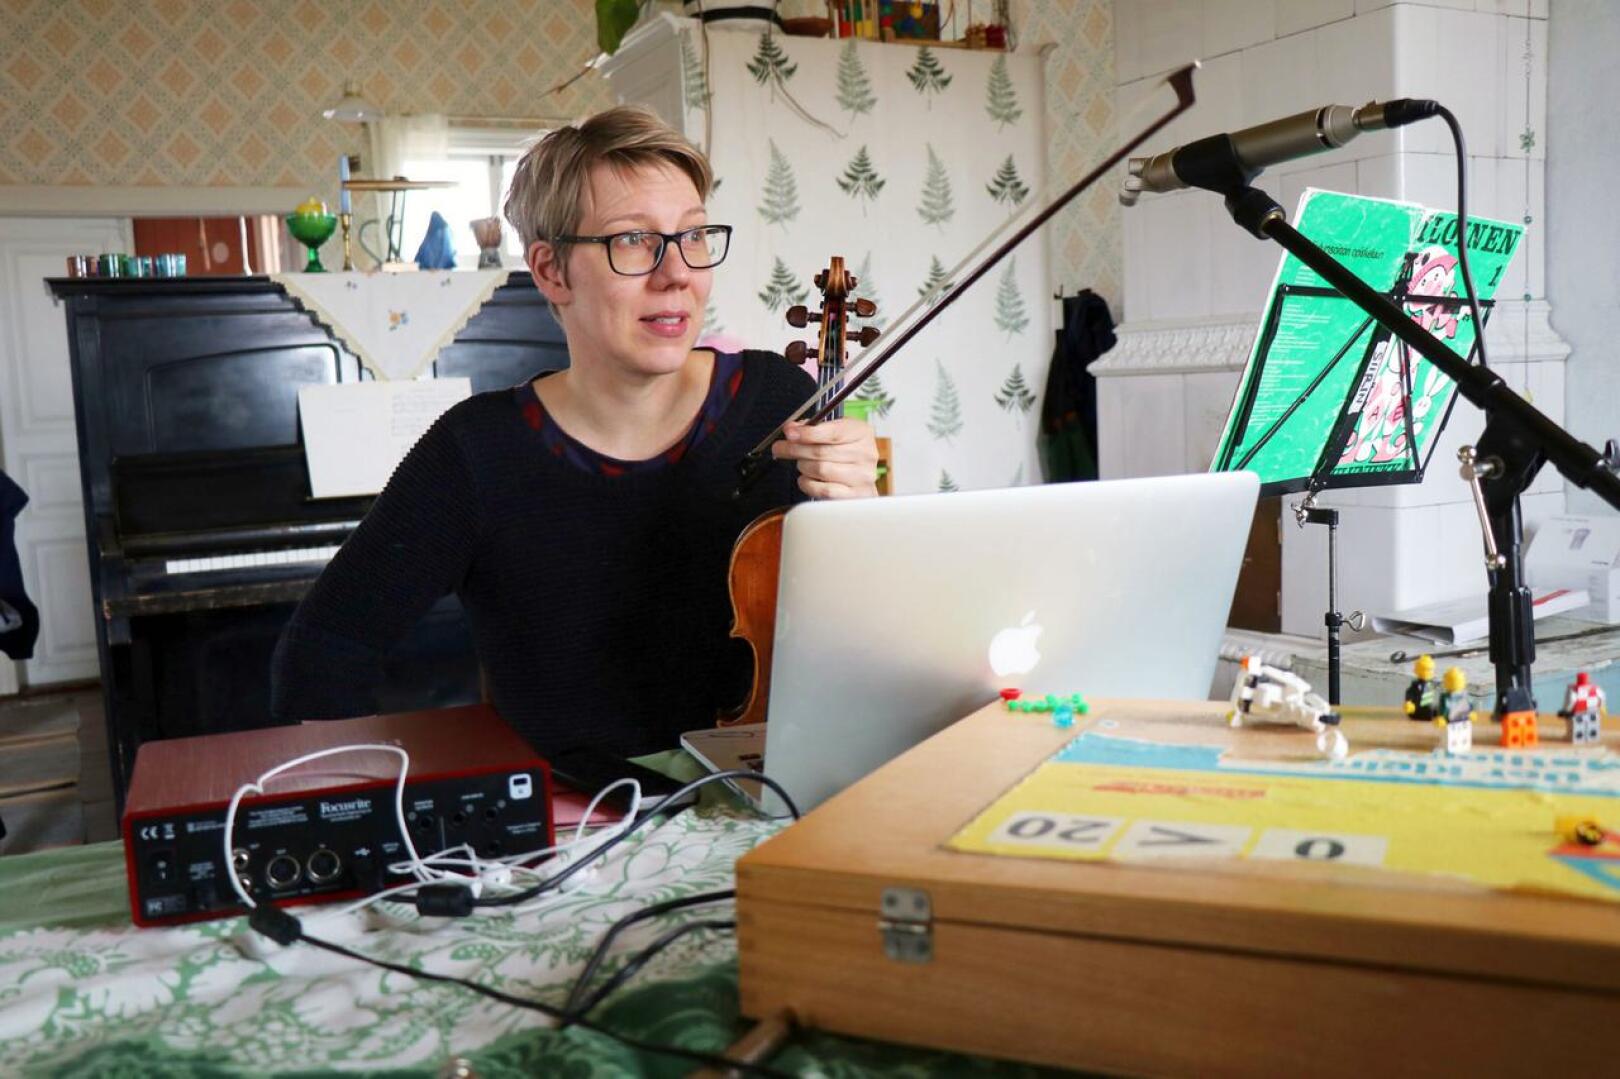 Näppäri-ope ja Perhonjokilaakson kansalaisopiston viulusoiton opettaja Siiri Virkkala on opettanut oppilaitaan kotoaan käsin etäyhteyksien avulla.